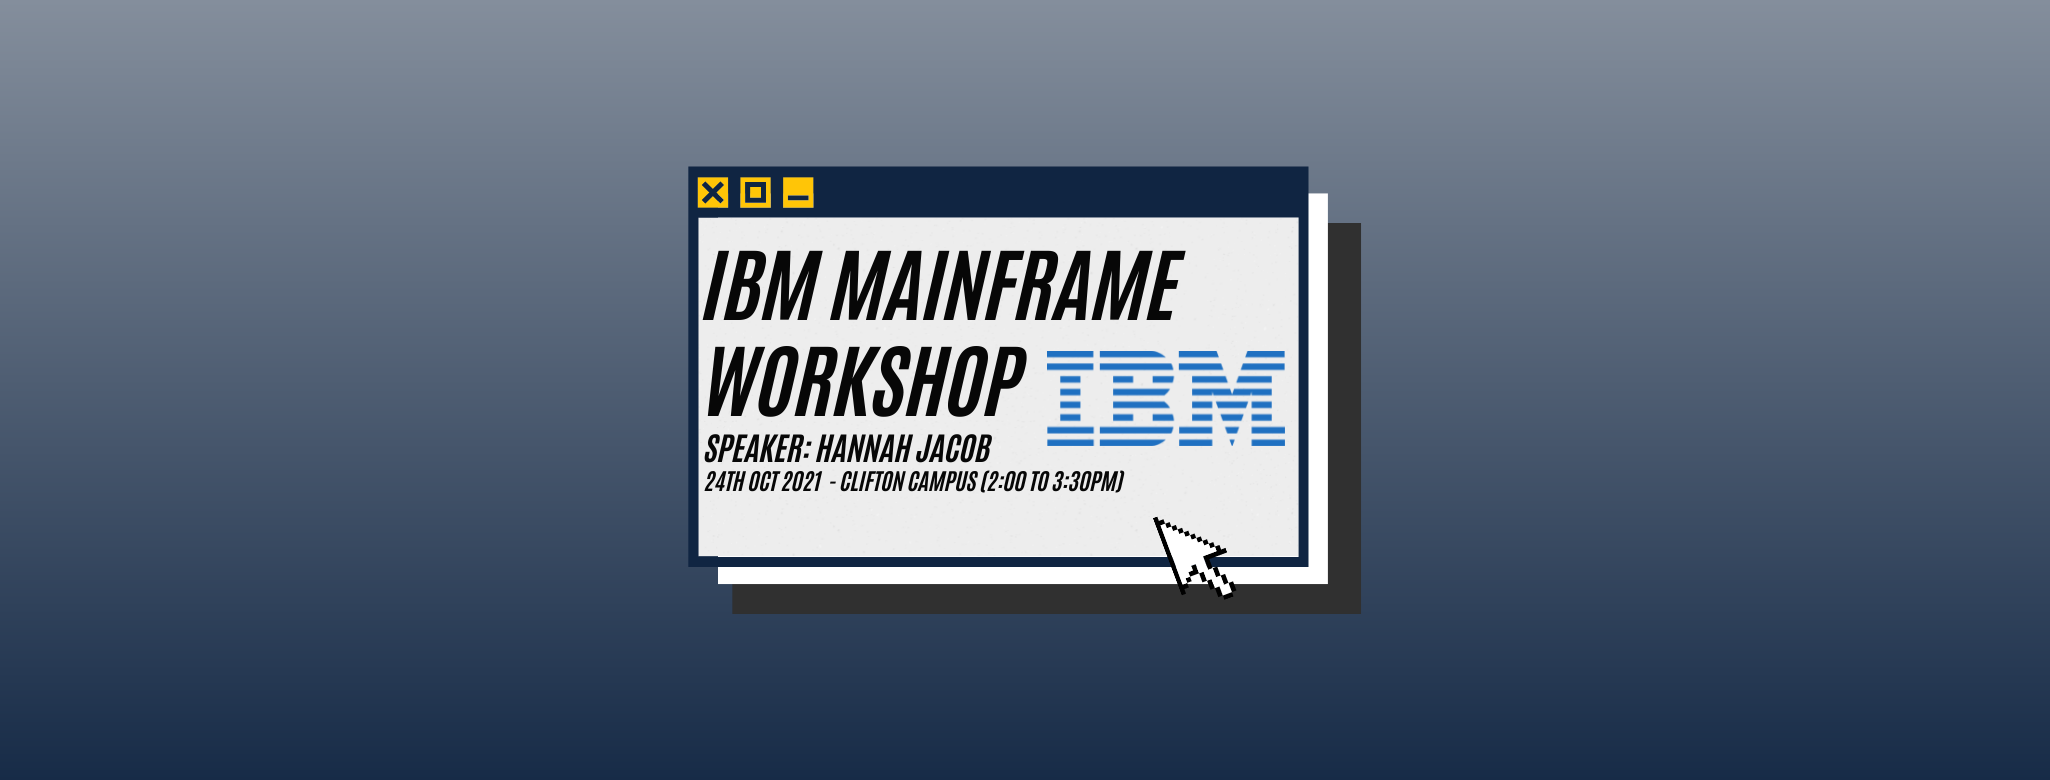 IBM Mainframe Banner